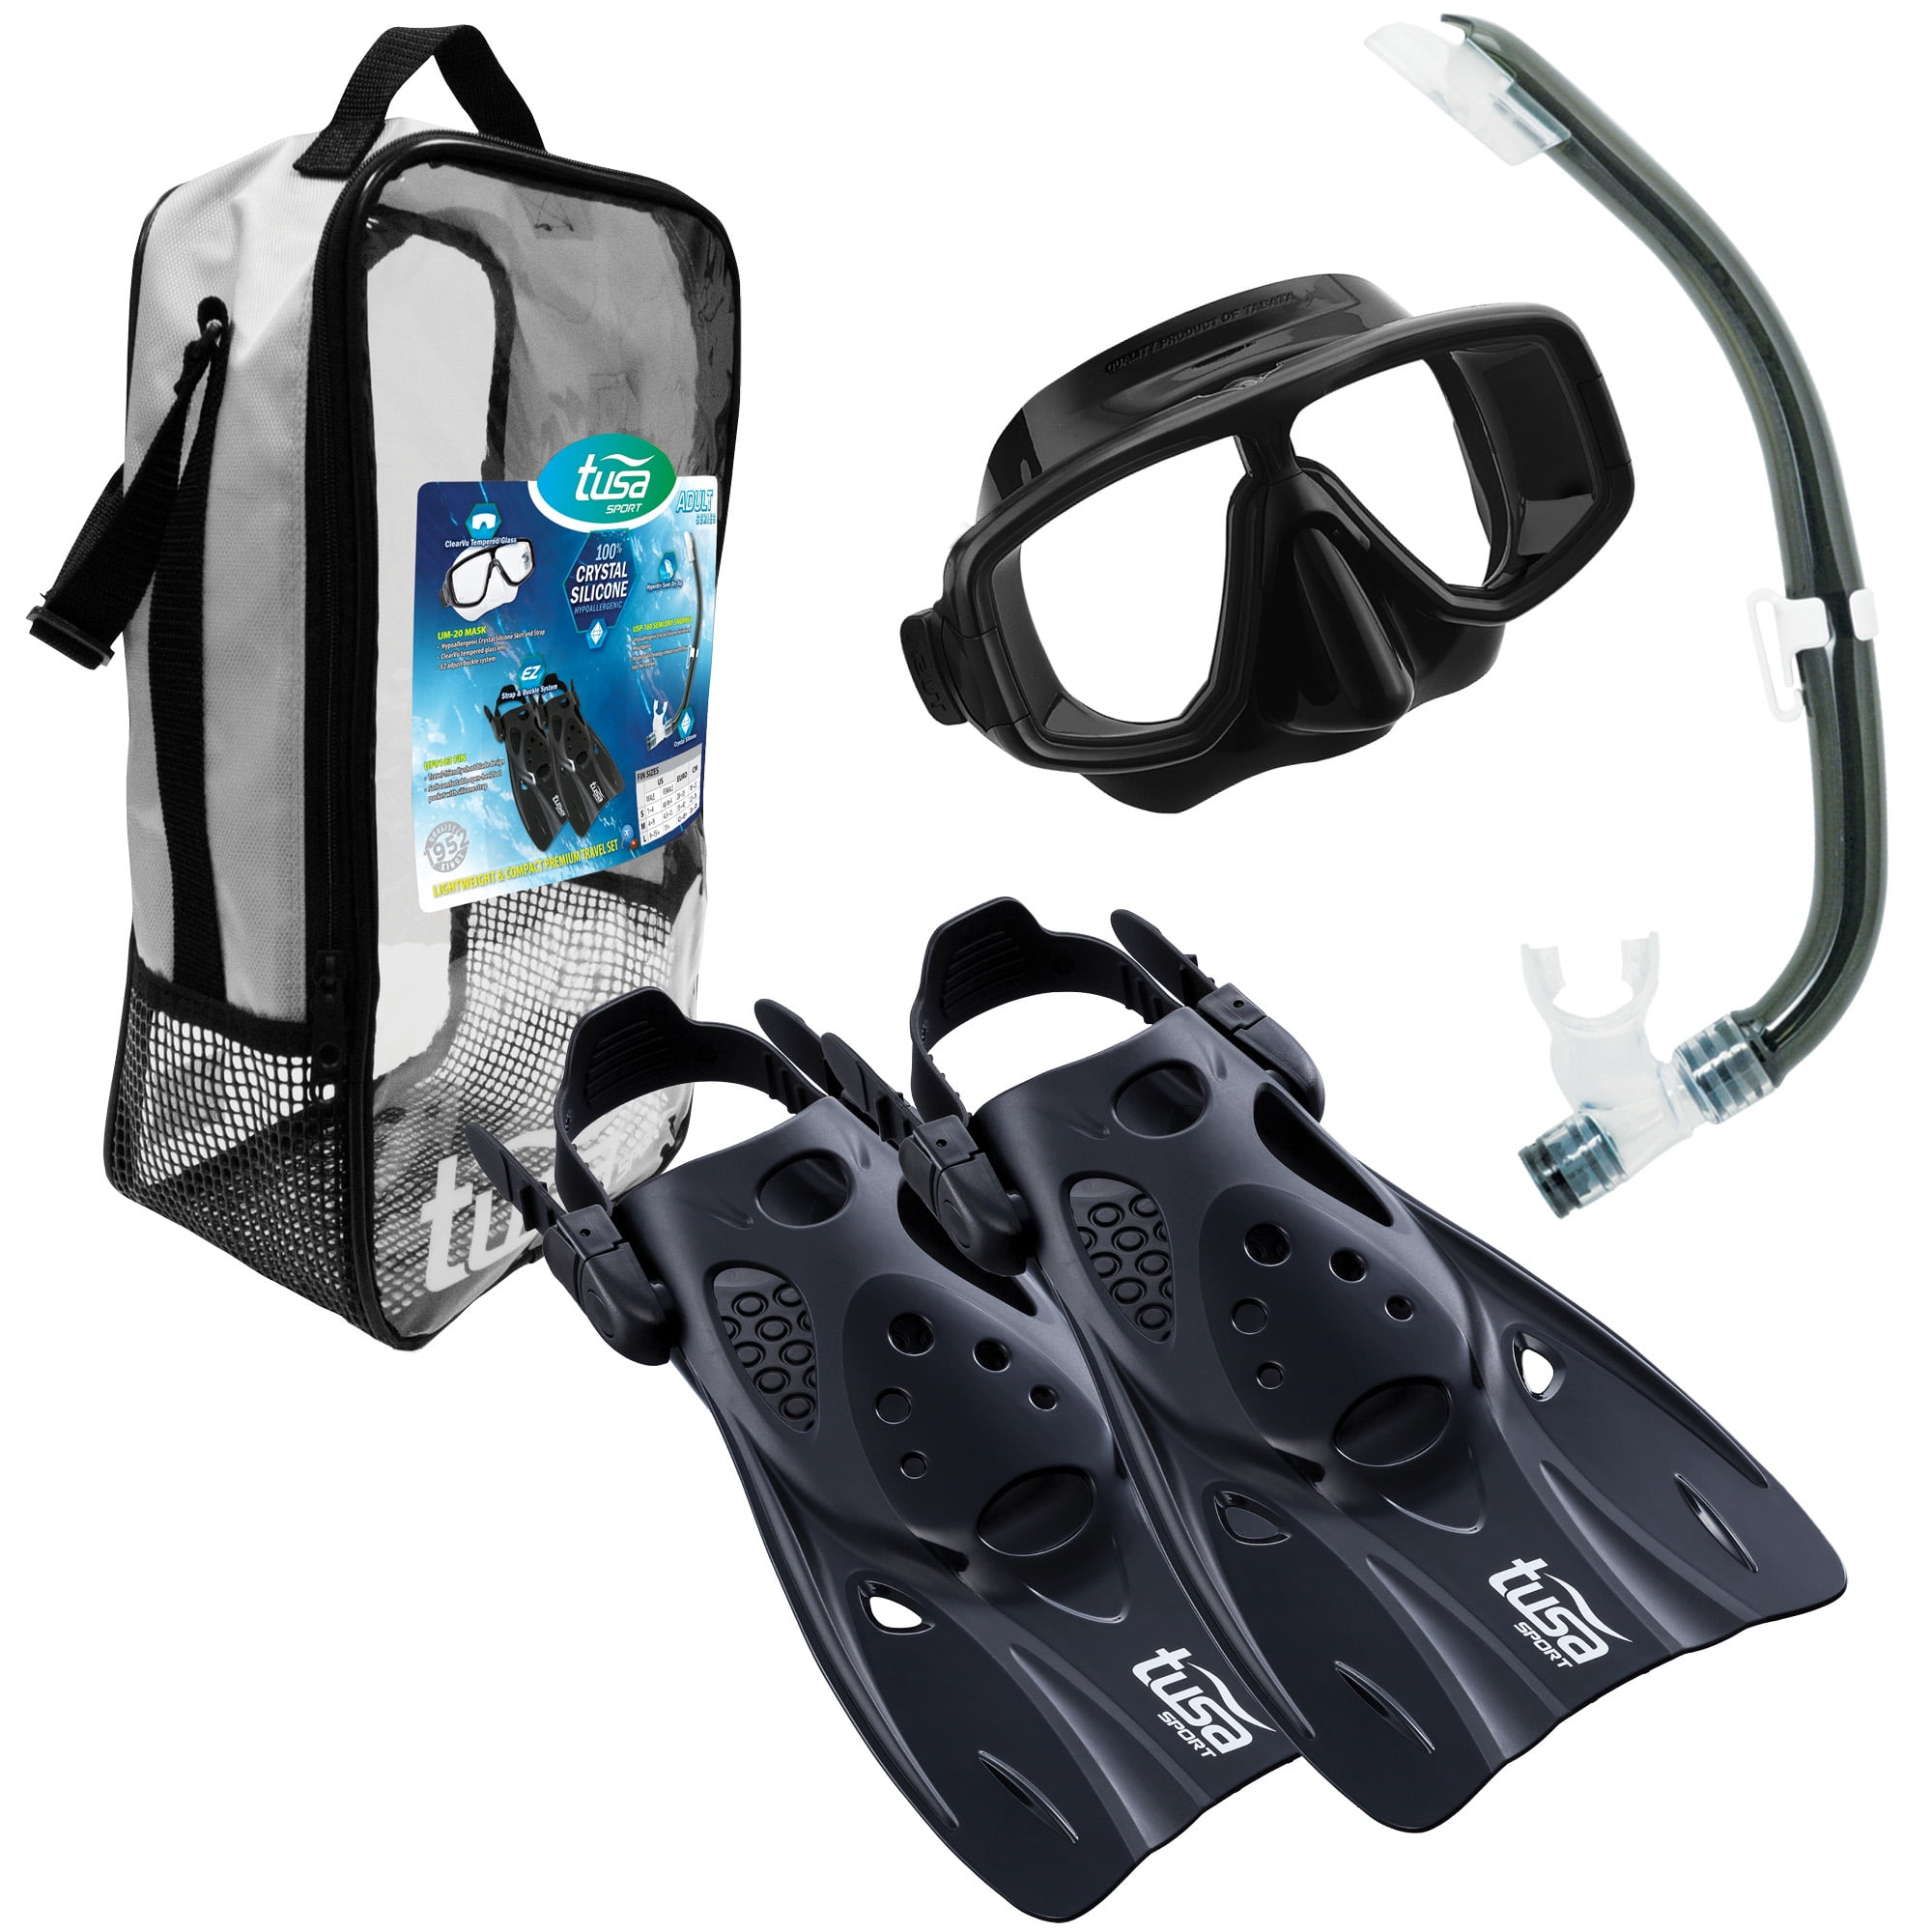 TUSA Sport Adult Platina Hyperdry Mask, Snorkel, & Fins Travel Set 